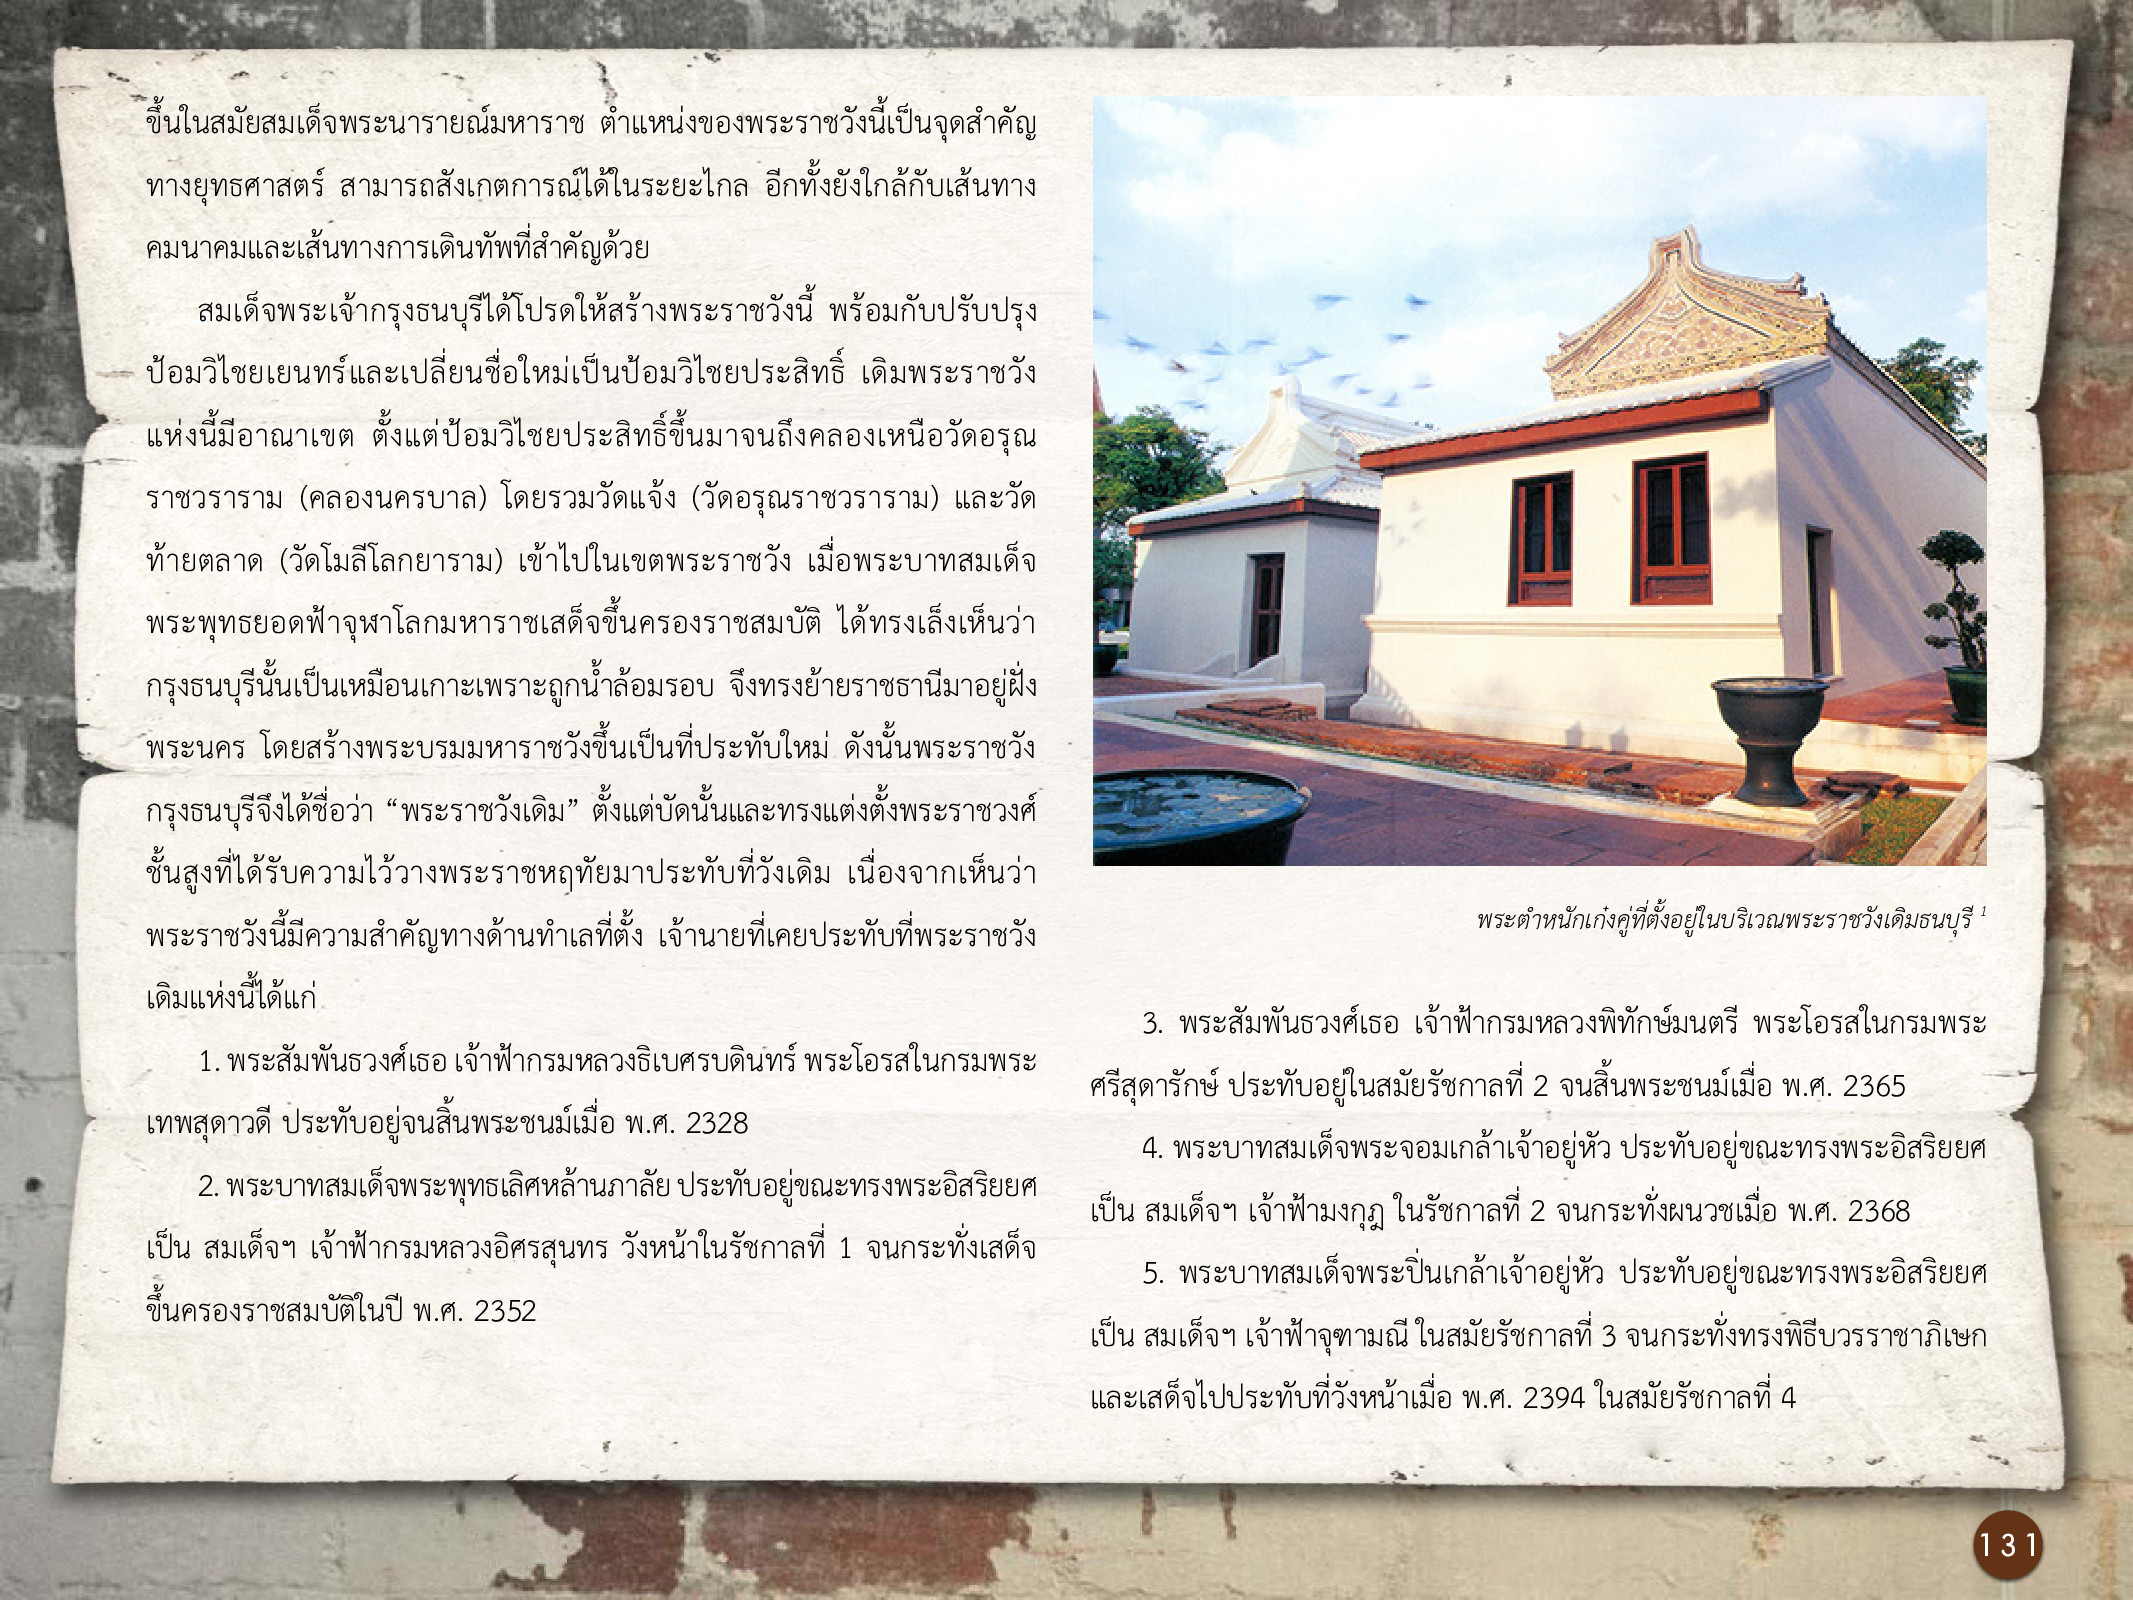 ศิลปกรรมกรุงธนบุรี ./images/encyclopedia/131.jpg